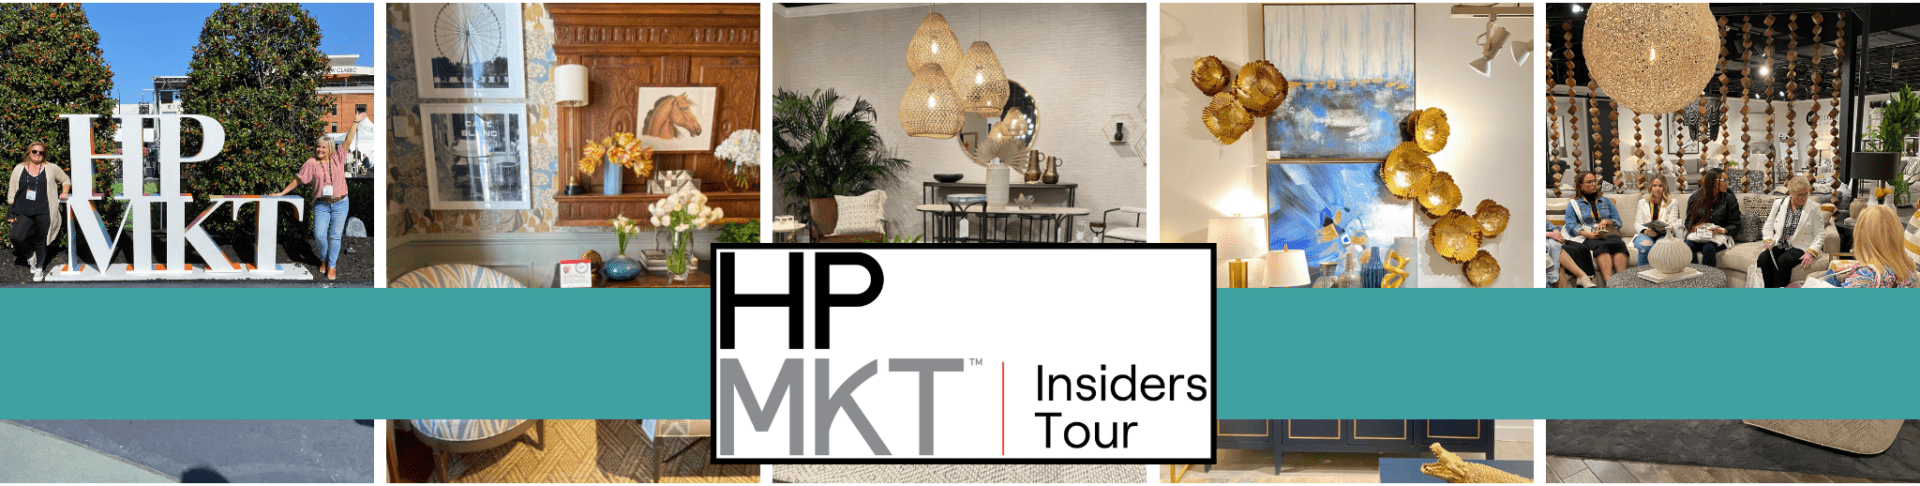 HPMKT Insiders Tour